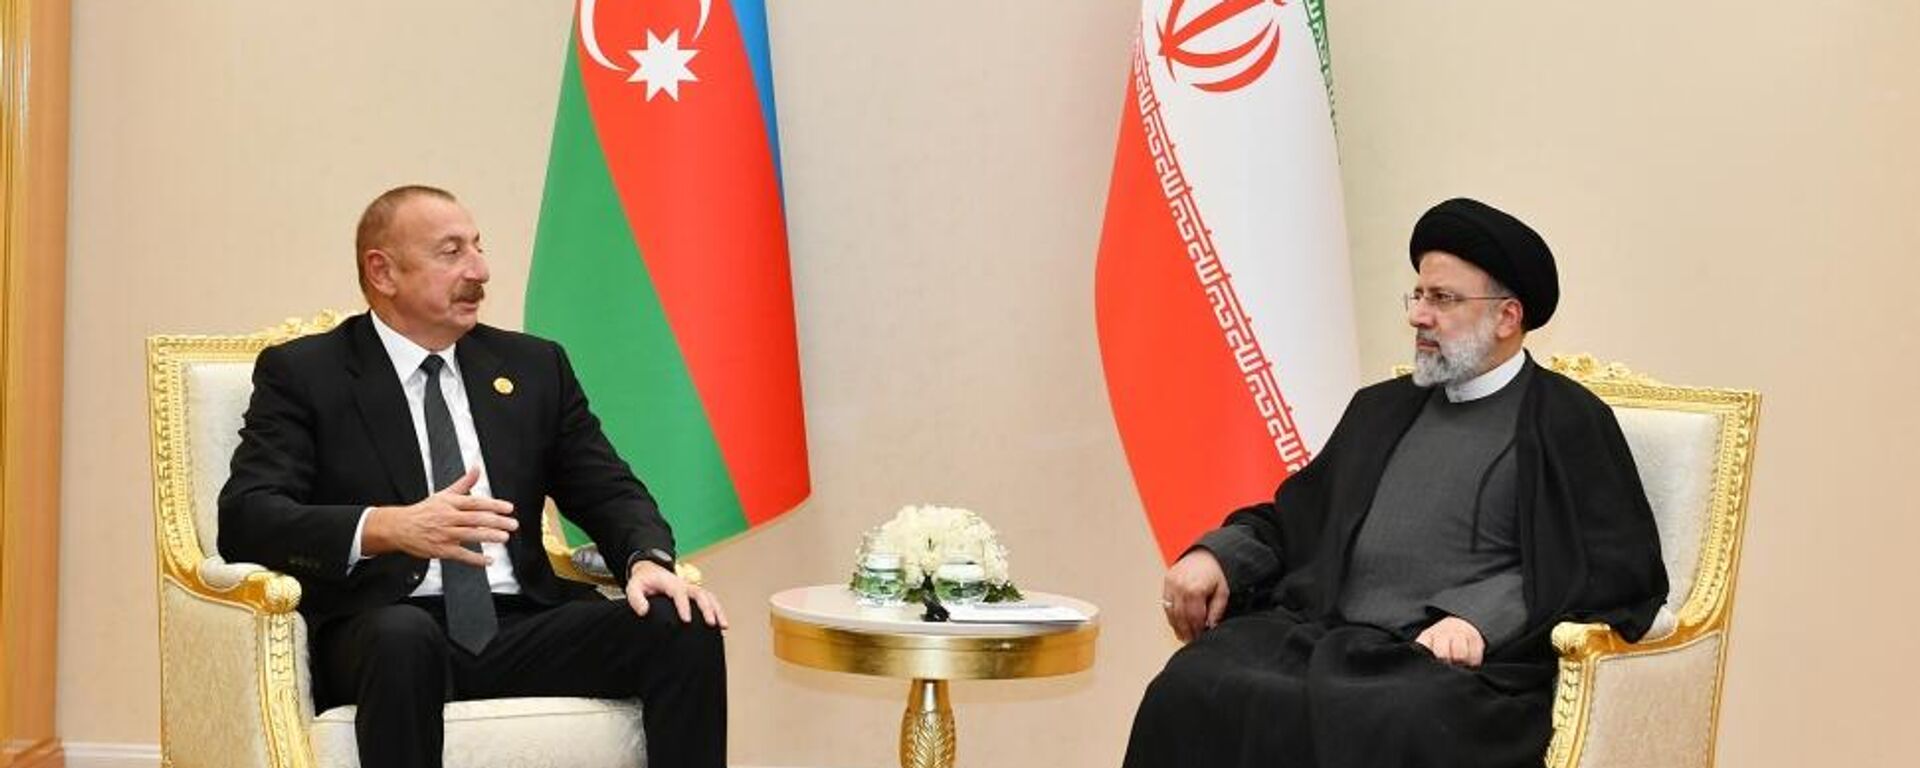 Президенты Азербайджана и Ирана Ильхам Алиев и Ибрахим Раиси - Sputnik Азербайджан, 1920, 28.11.2021